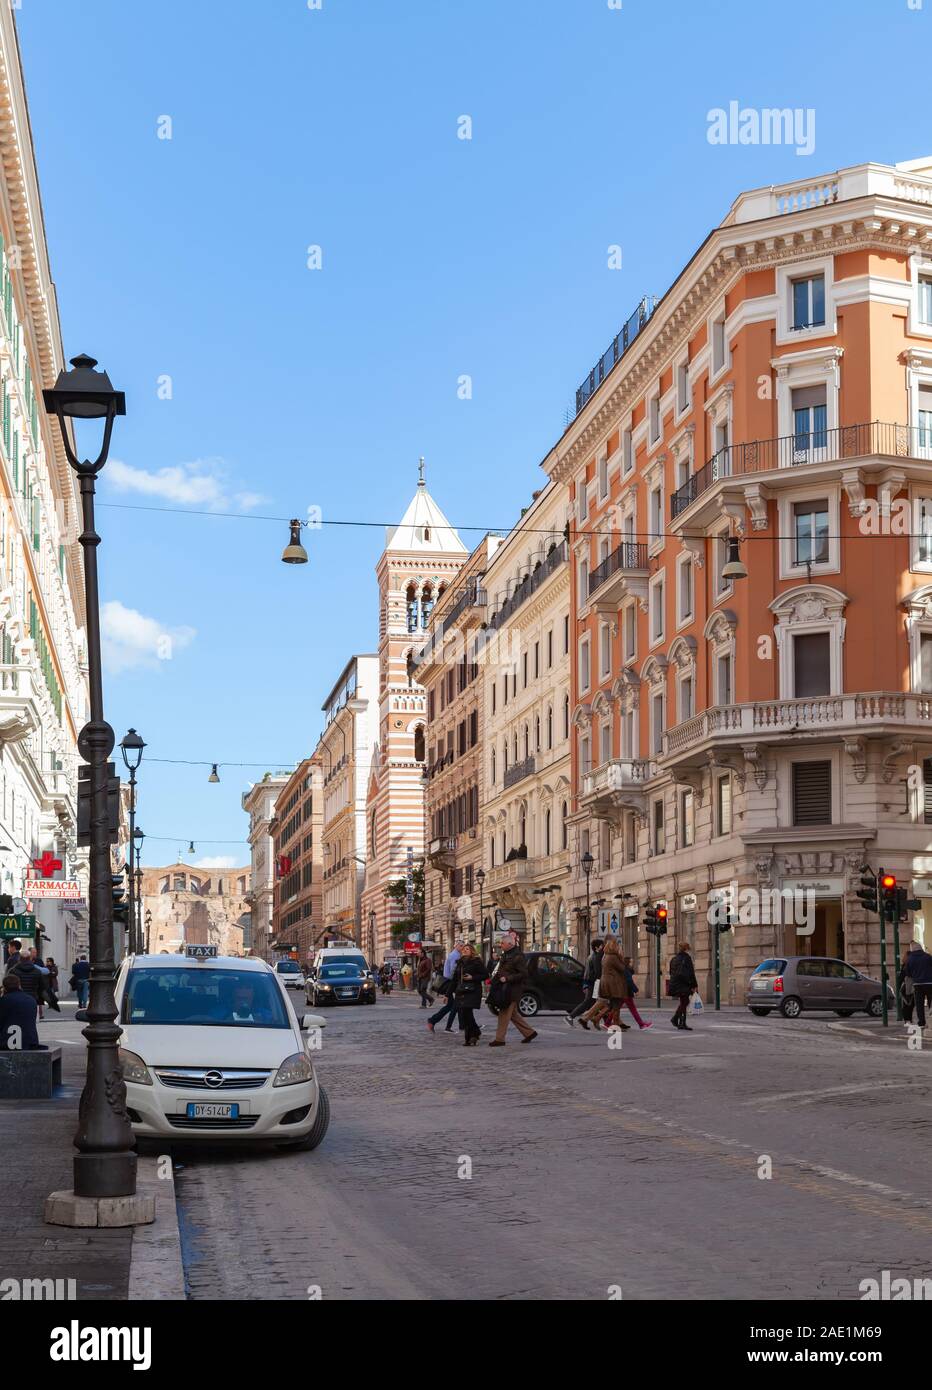 Rome, Italie - Février 13, 2016 : la rue verticale Vue de Rome avec des voitures garées à proximité de maisons individuelles de luxe Banque D'Images